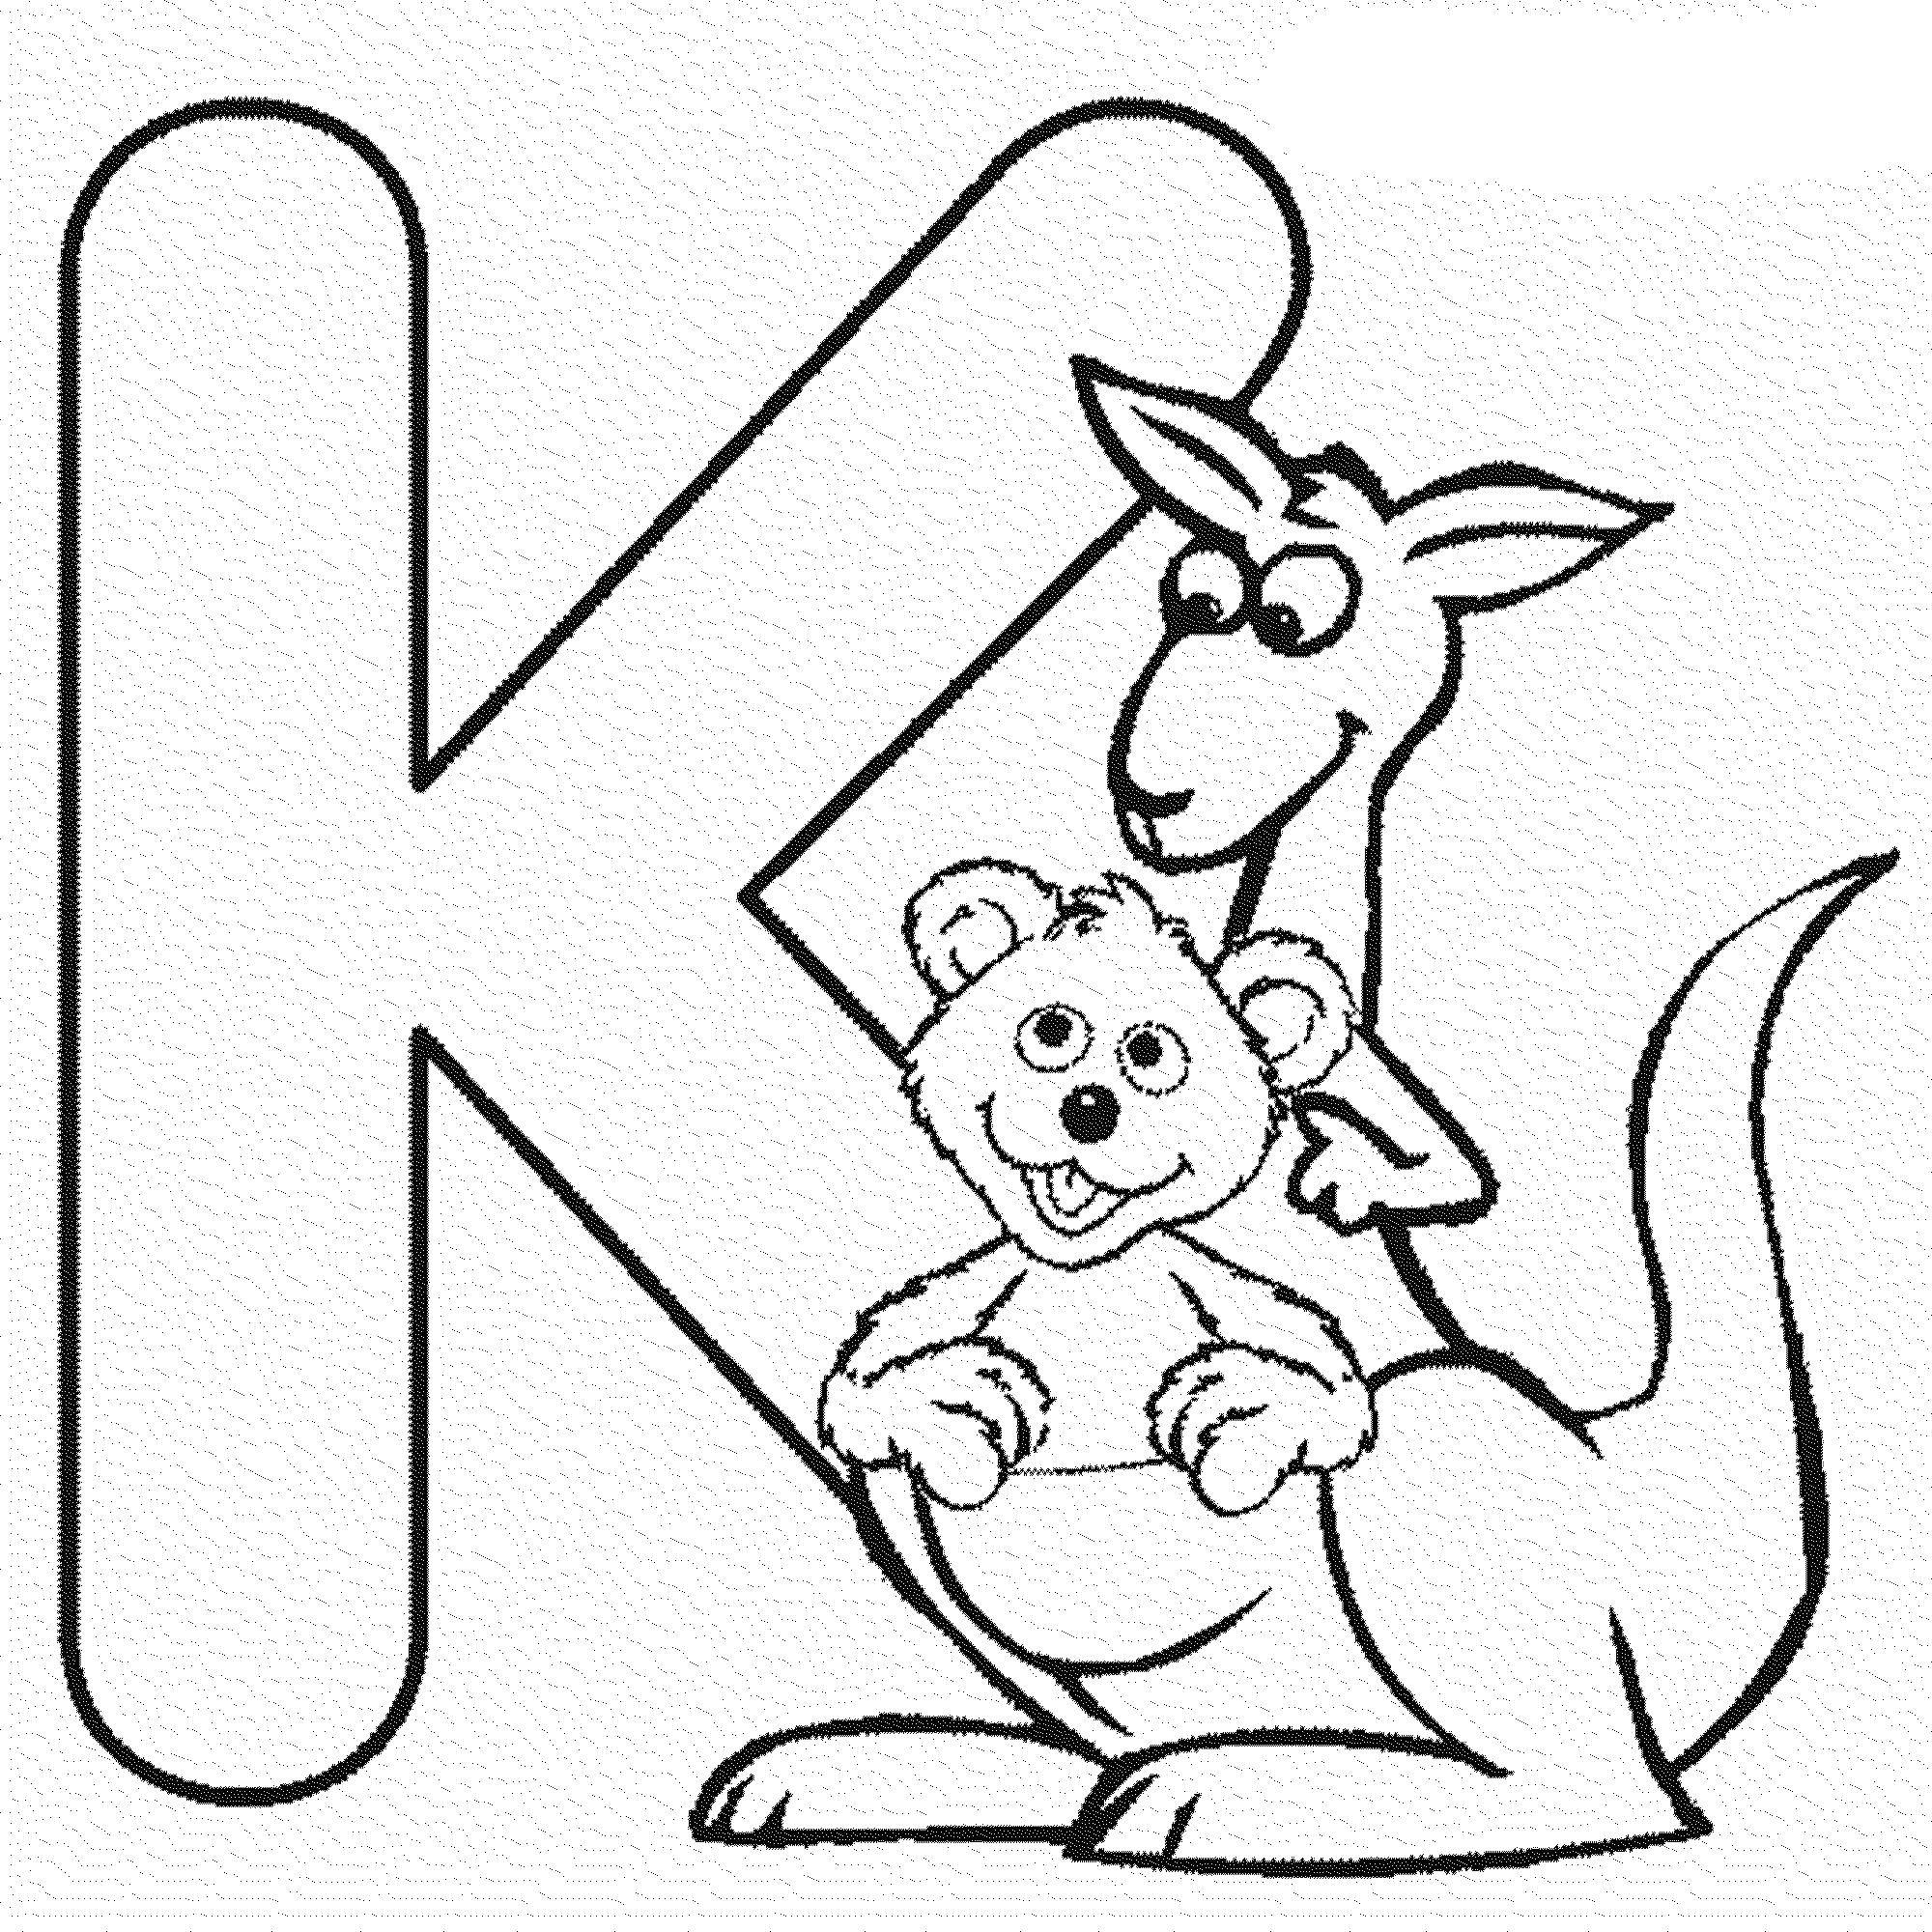 Название: Раскраска Английский алфавит к кенгуру. Категория: Английский алфавит. Теги: Английский алфавит, К.